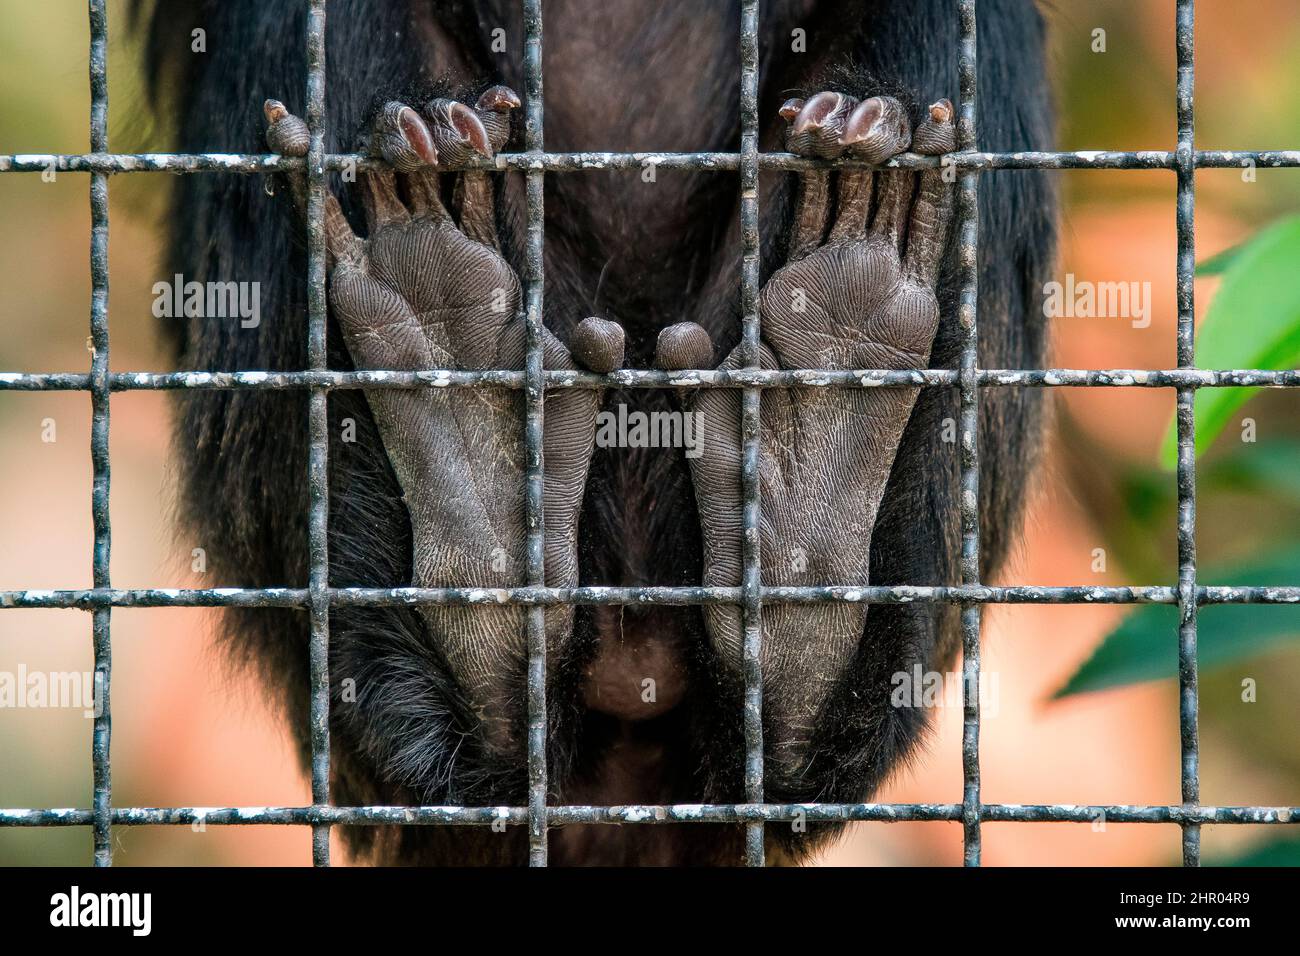 Piedi di una scimmia di Goeldi (Callimico goeldii) in una gabbia nel Menagerie Zoo del Museo nazionale d'histoire naturelle, Parigi, Francia Foto Stock